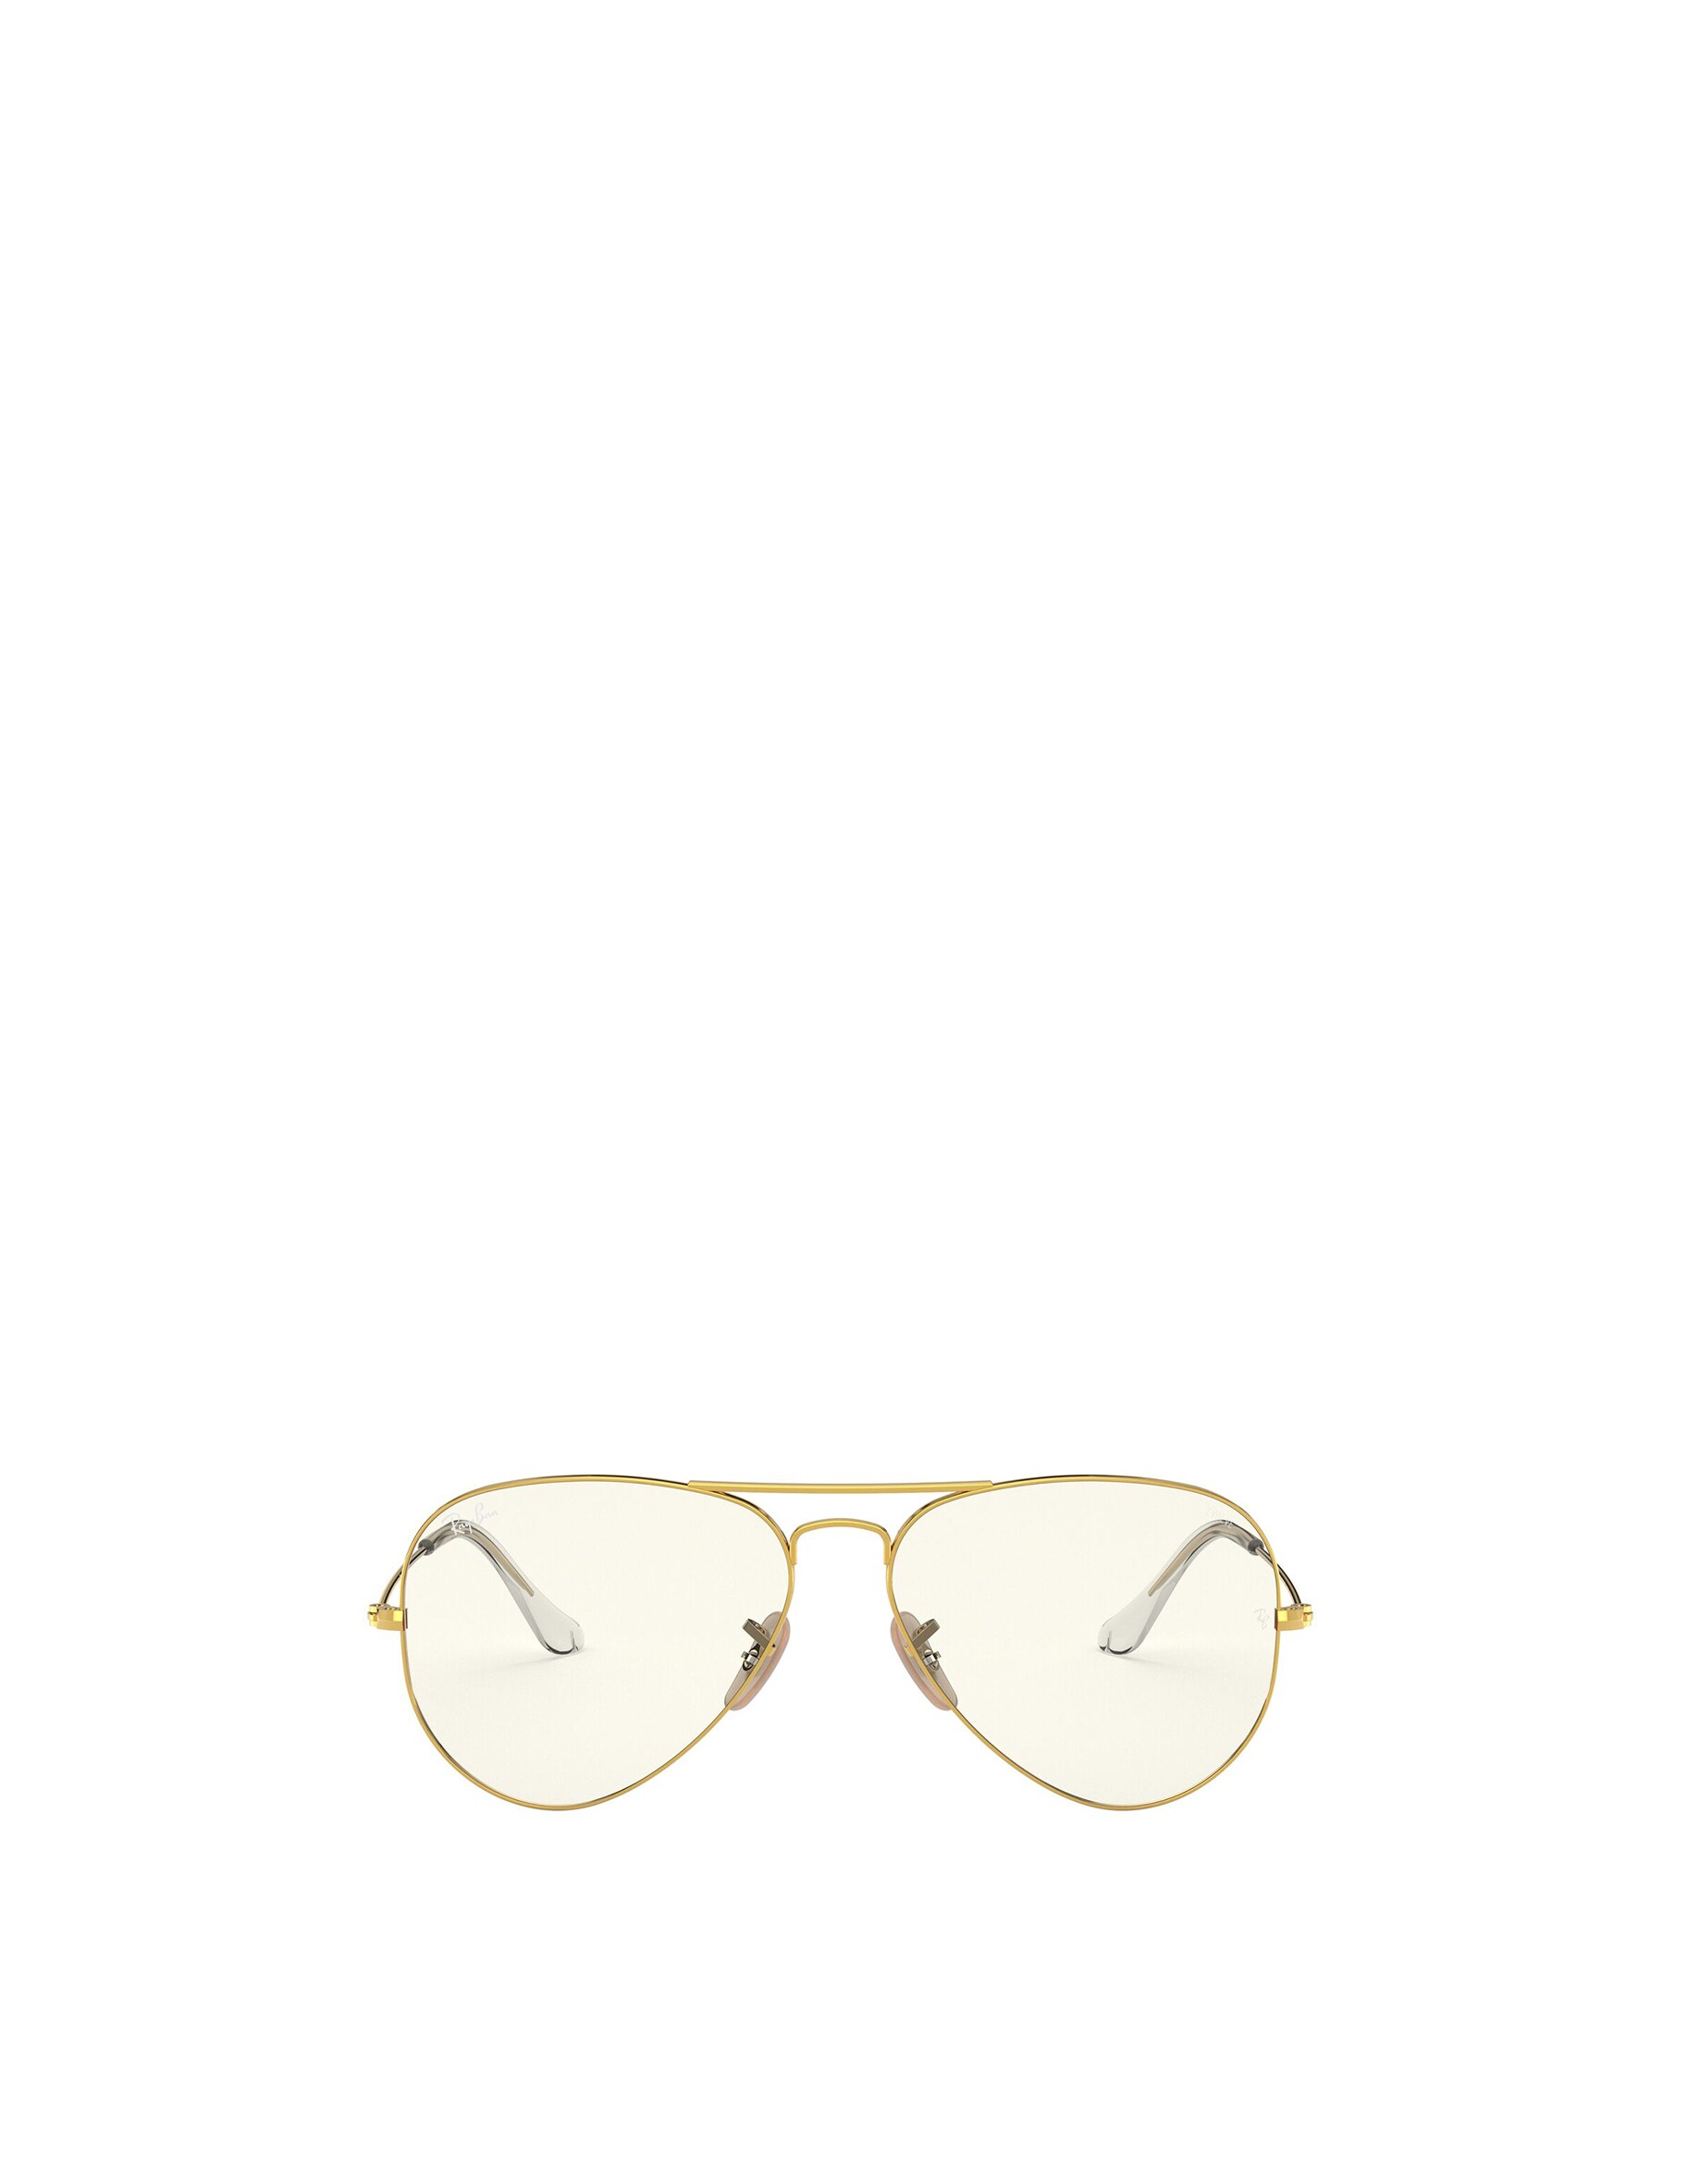 Солнцезащитные очки-авиаторы Ray-ban Ray-Ban, золотой